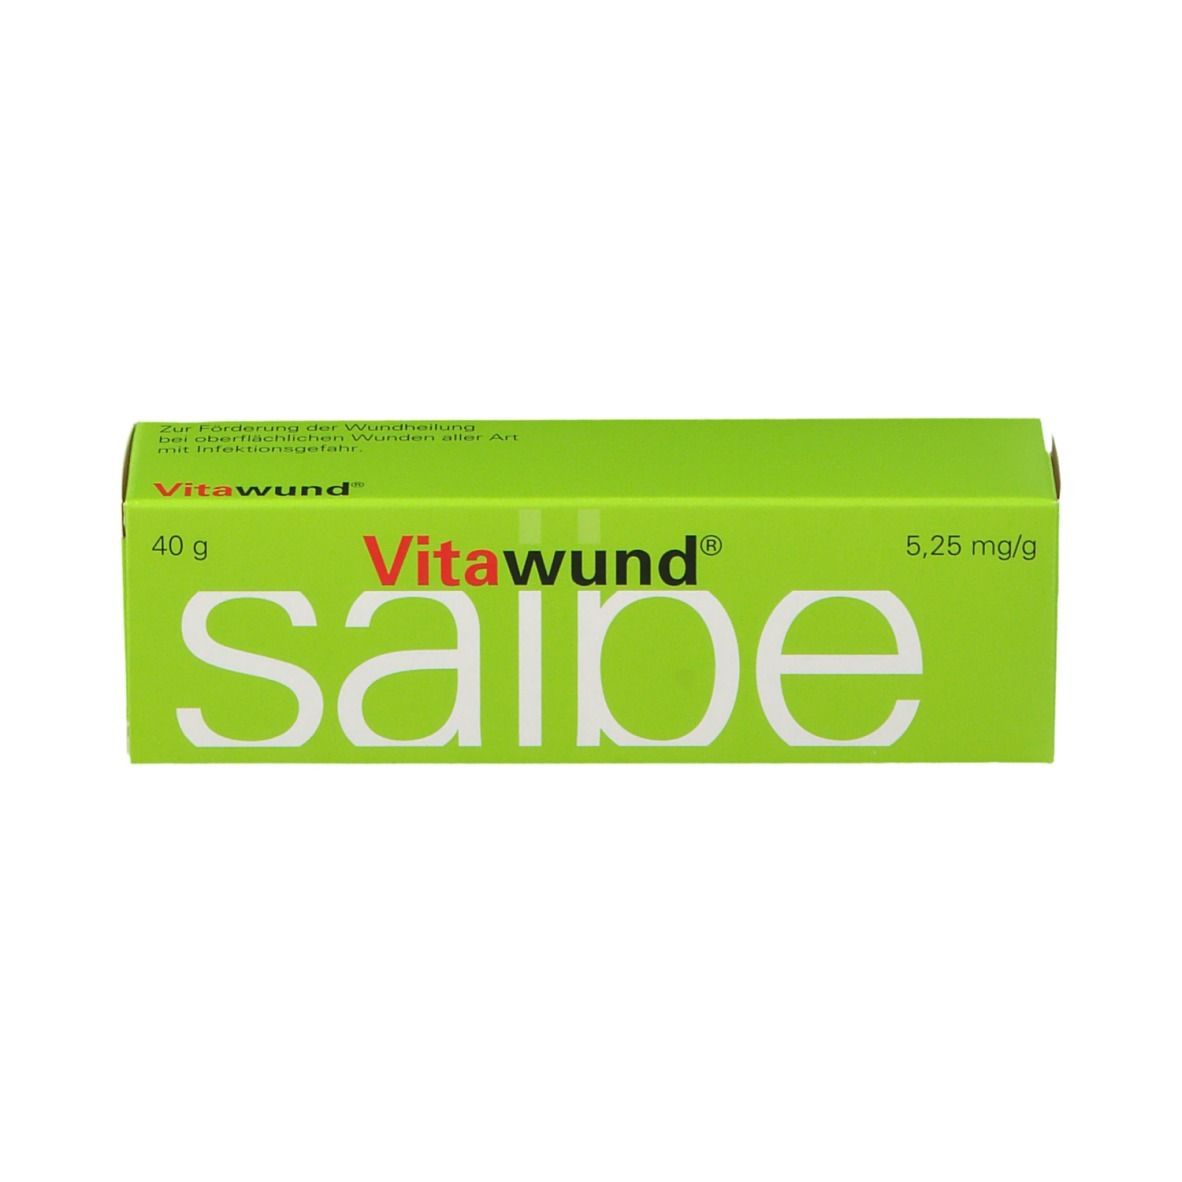 Vitawund® Salbe